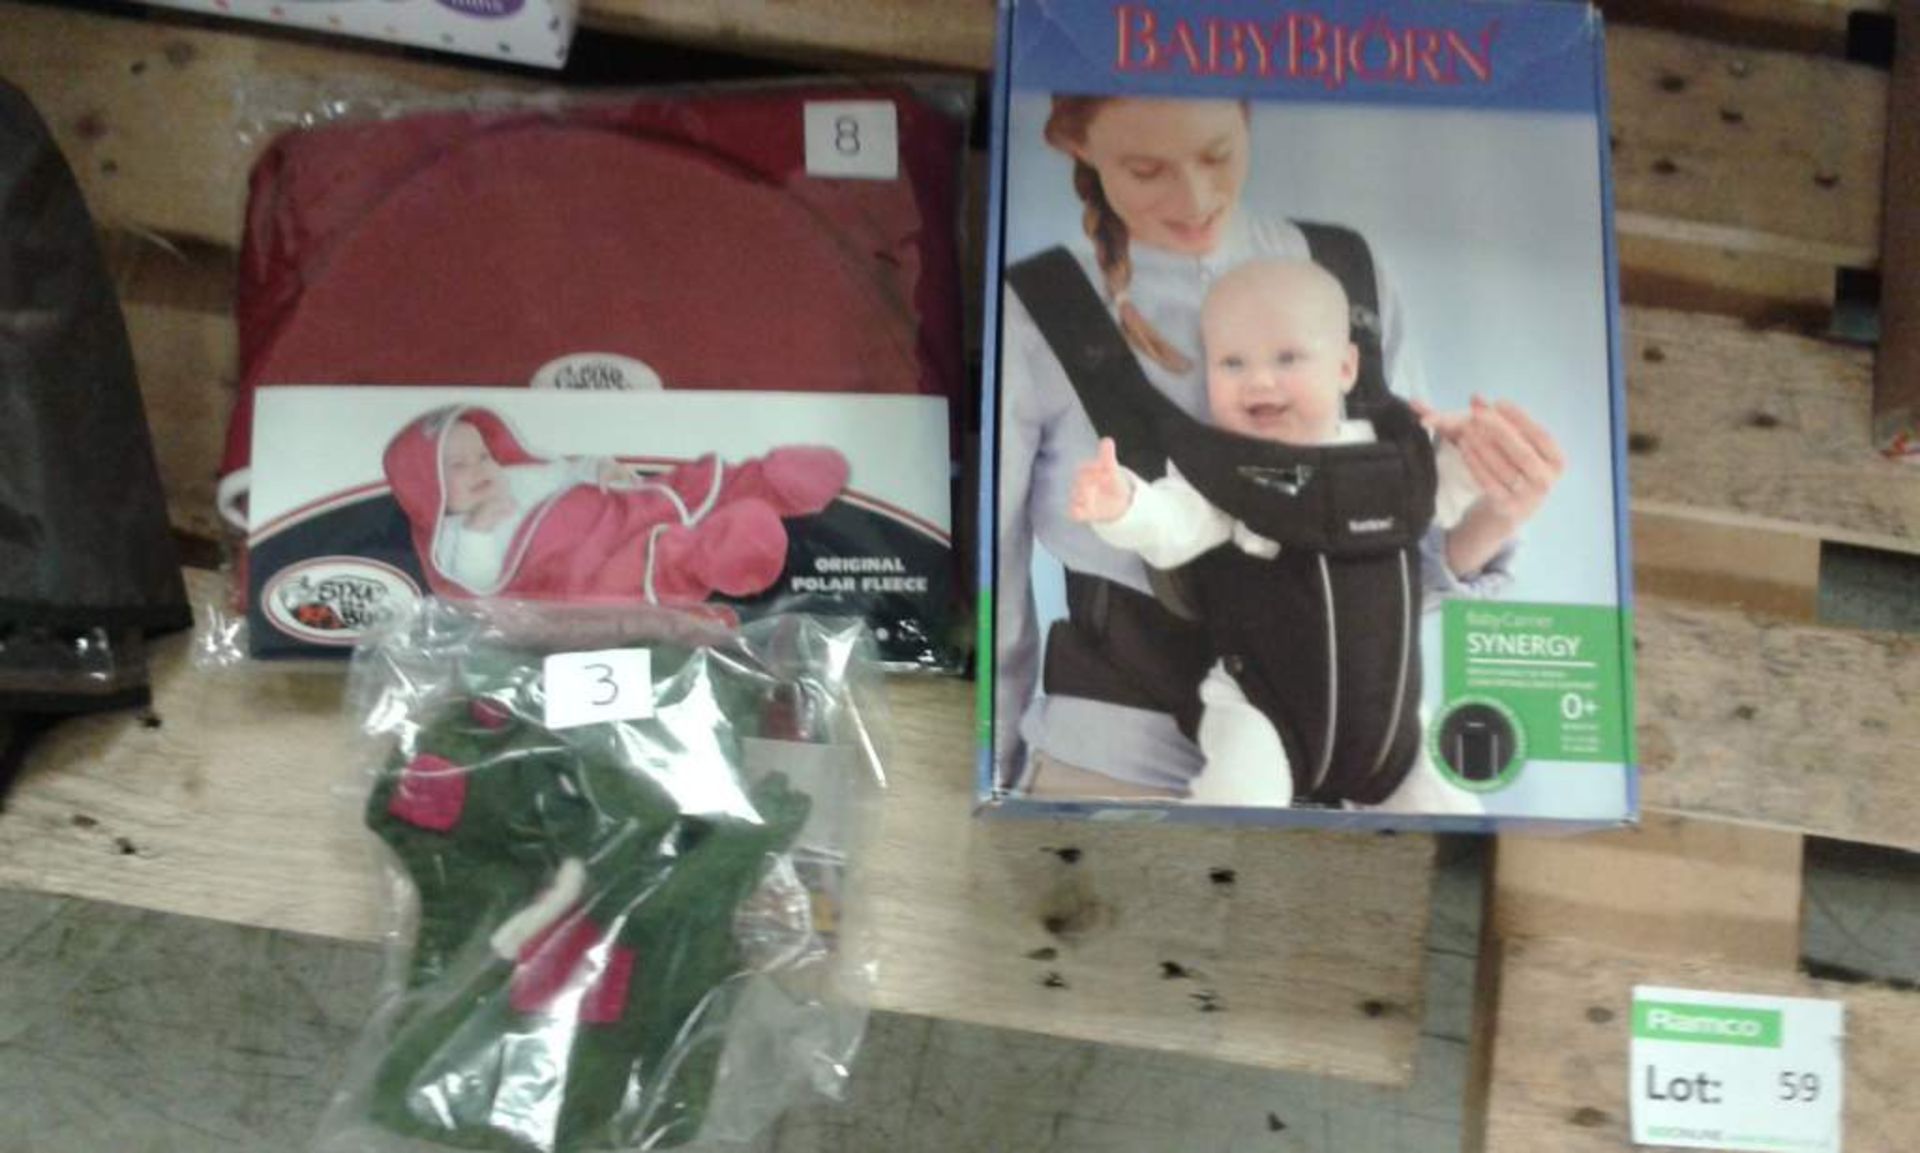 Various Baby Items - Rocker, Pop up Bassinette, Blanket, Carrier, Pram Cover - Image 2 of 4